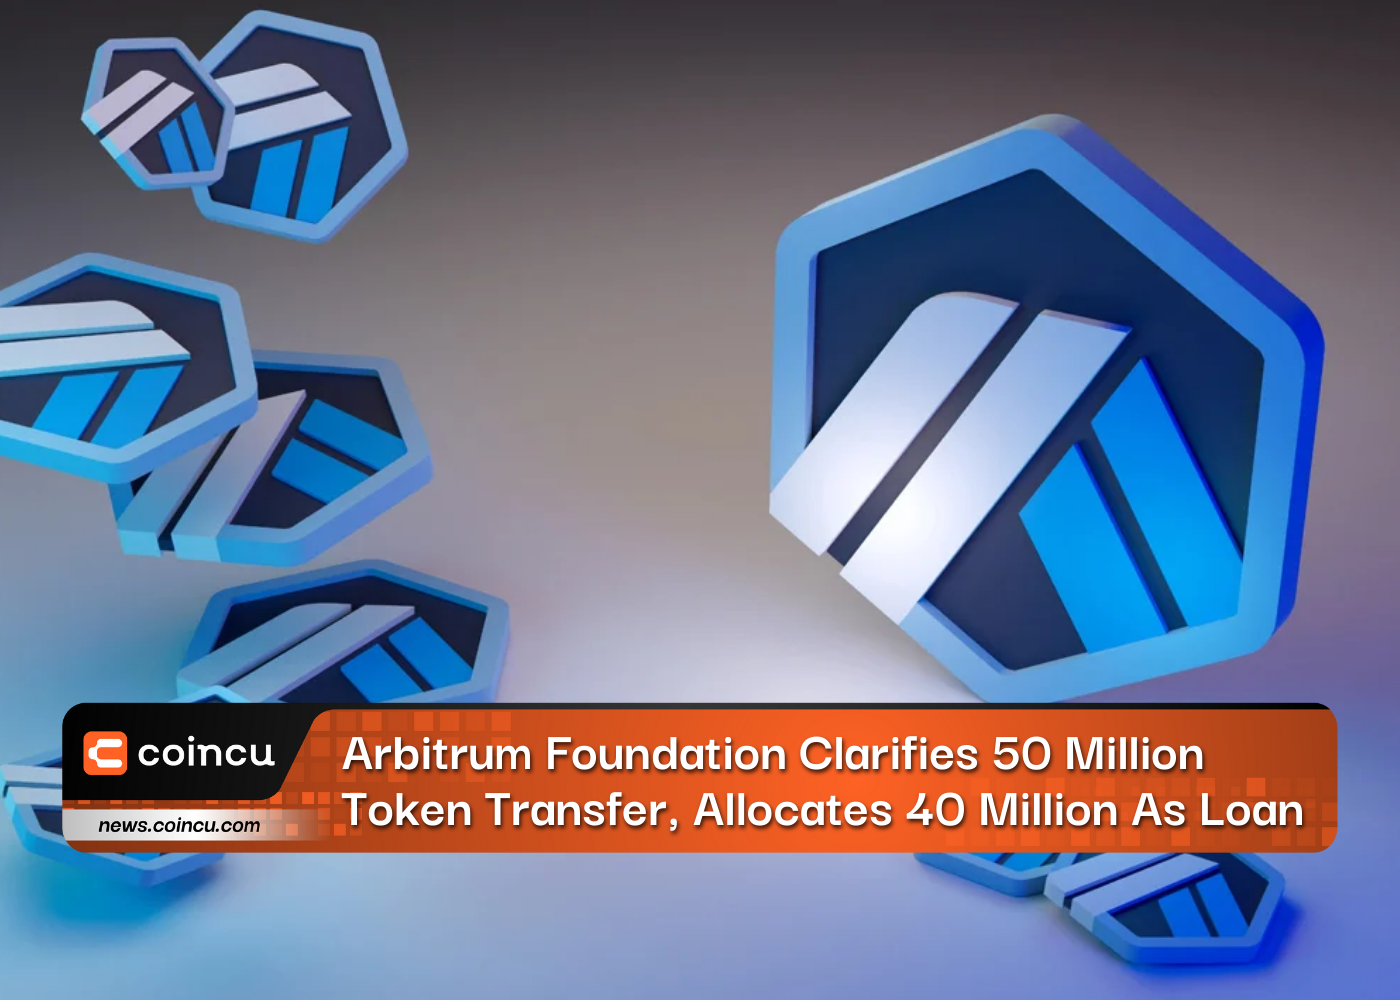 Die Arbitrum Foundation klärt die Übertragung von 50 Millionen Token und stellt 40 Millionen als Darlehen zur Verfügung